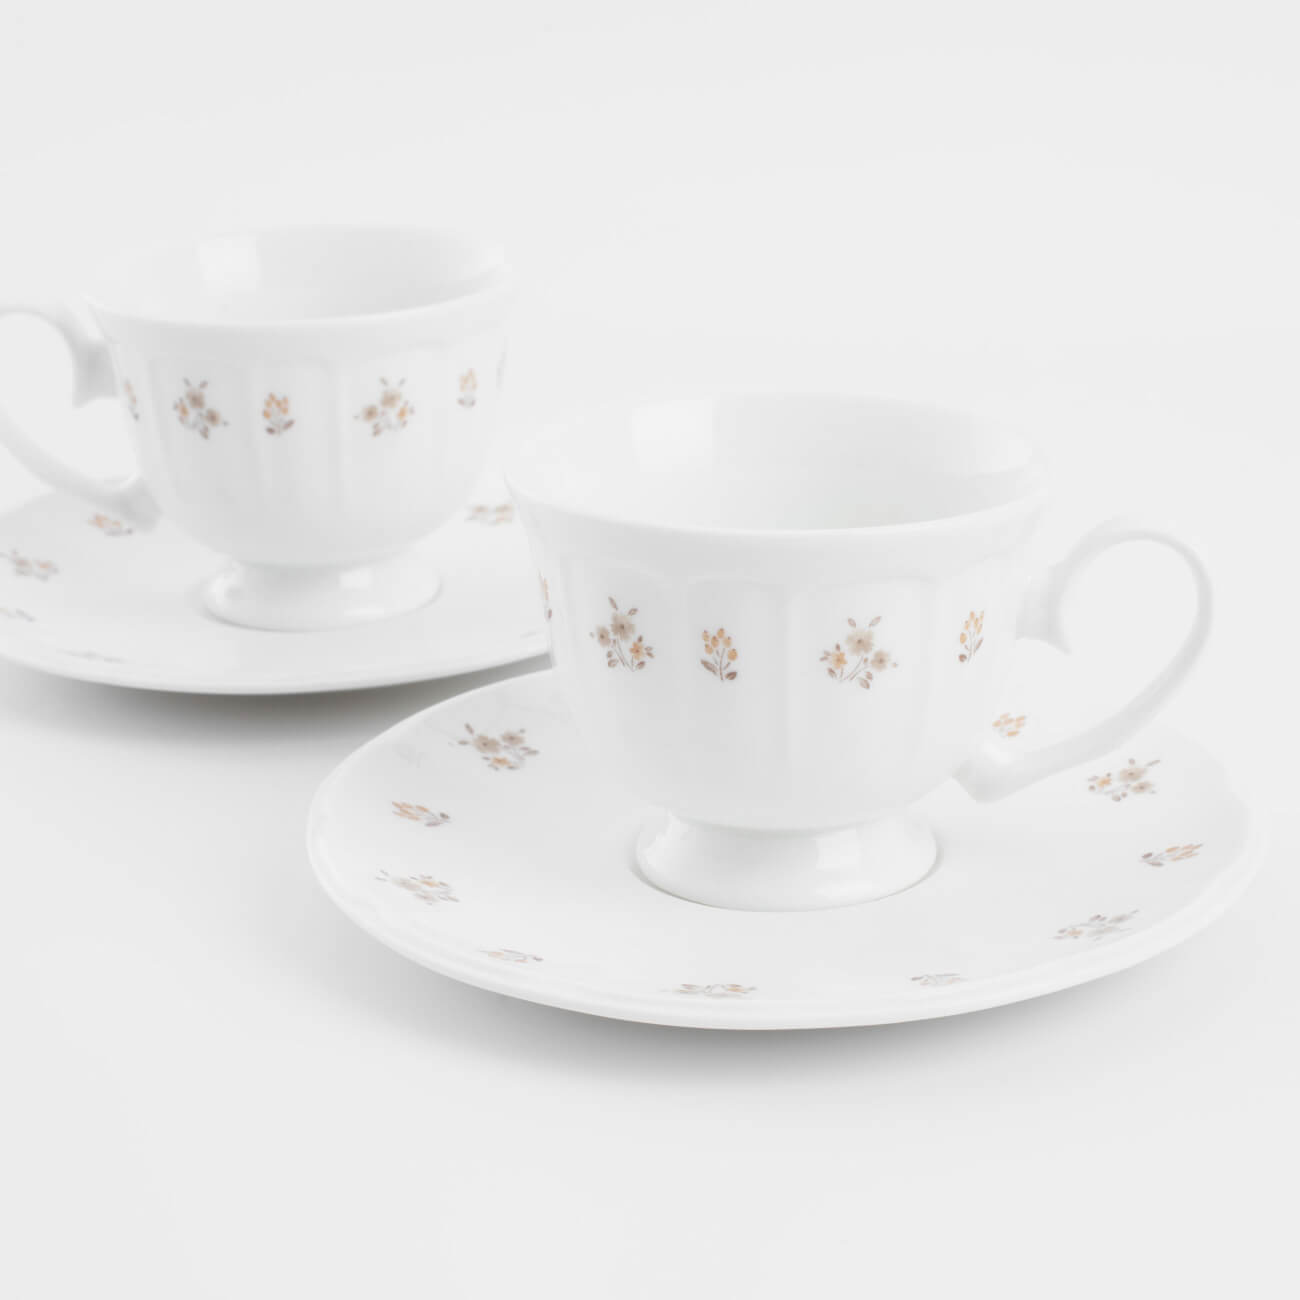 Пара чайная, 2 перс, 4 пр, 180 мл, фарфор N, белая, Винтажные цветы, La flore изображение № 1